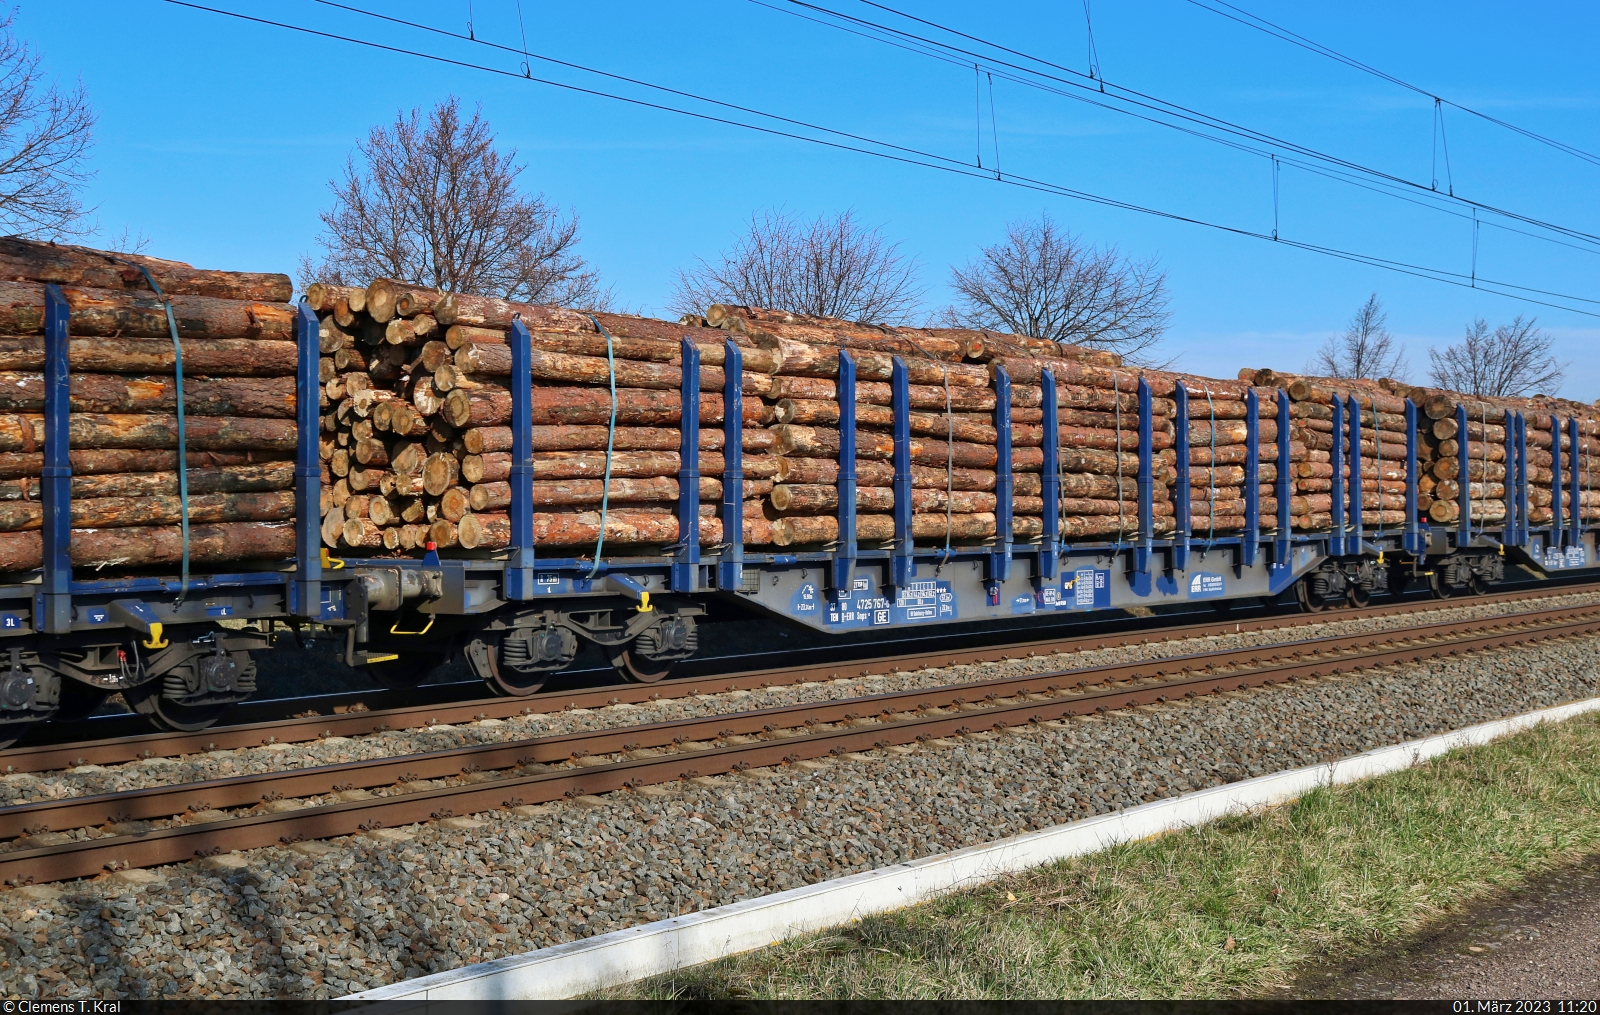 Vierachsiger Flachwagen für den Transport von Holzstämmen mit der Bezeichnung  Snps <sup>52</sup>  (37 80 4725 767-0 D-ERR), gezogen von 187 316-5 in Braschwitz Richtung Halle (Saale).

🧰 ERR European Rail Rent GmbH (ERR)
🕓 1.3.2023 | 11:20 Uhr